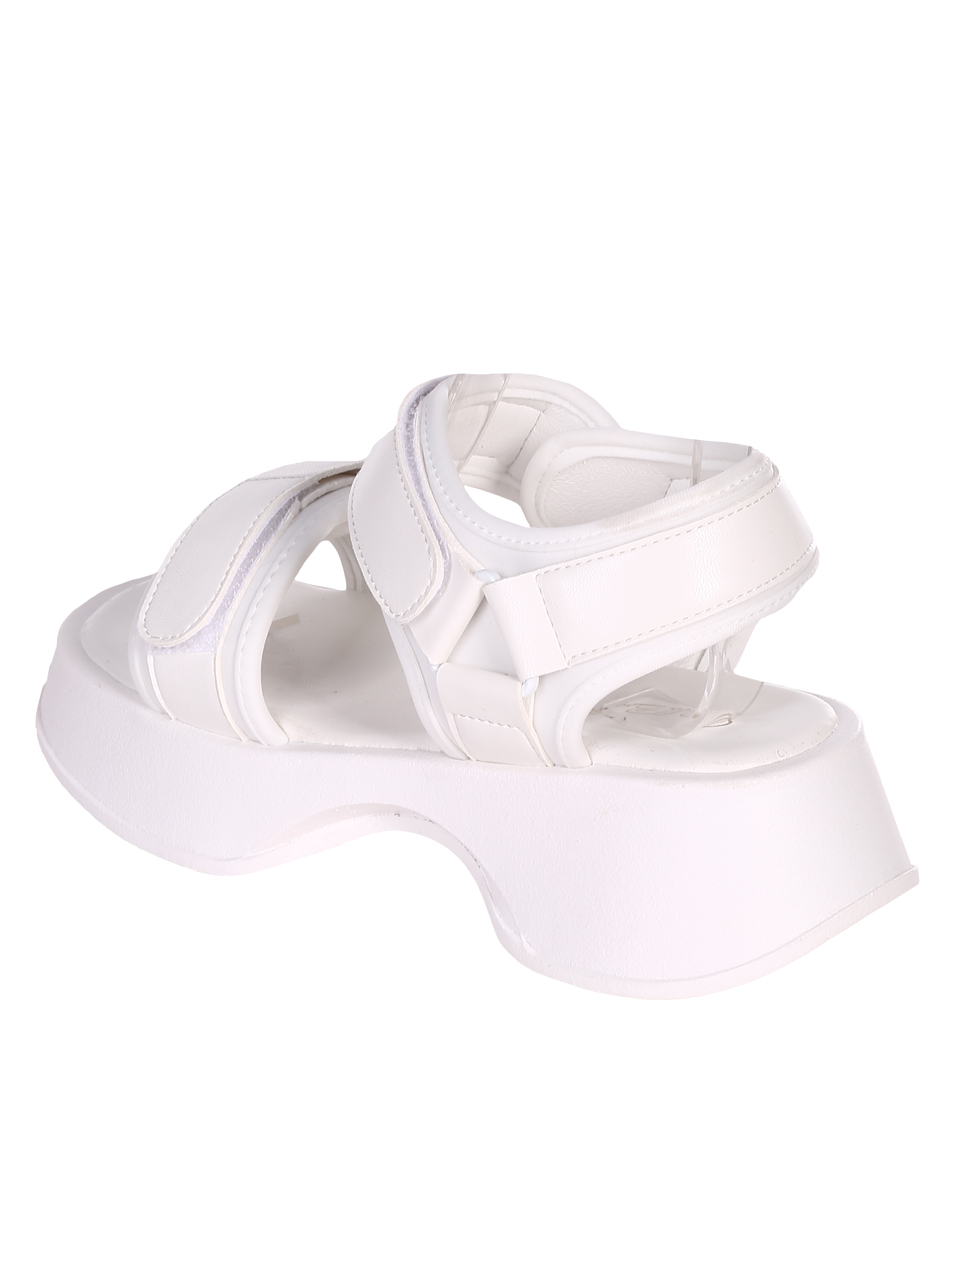 Ежедневни дамски комфортни сандали на платформа 4H-23107 white